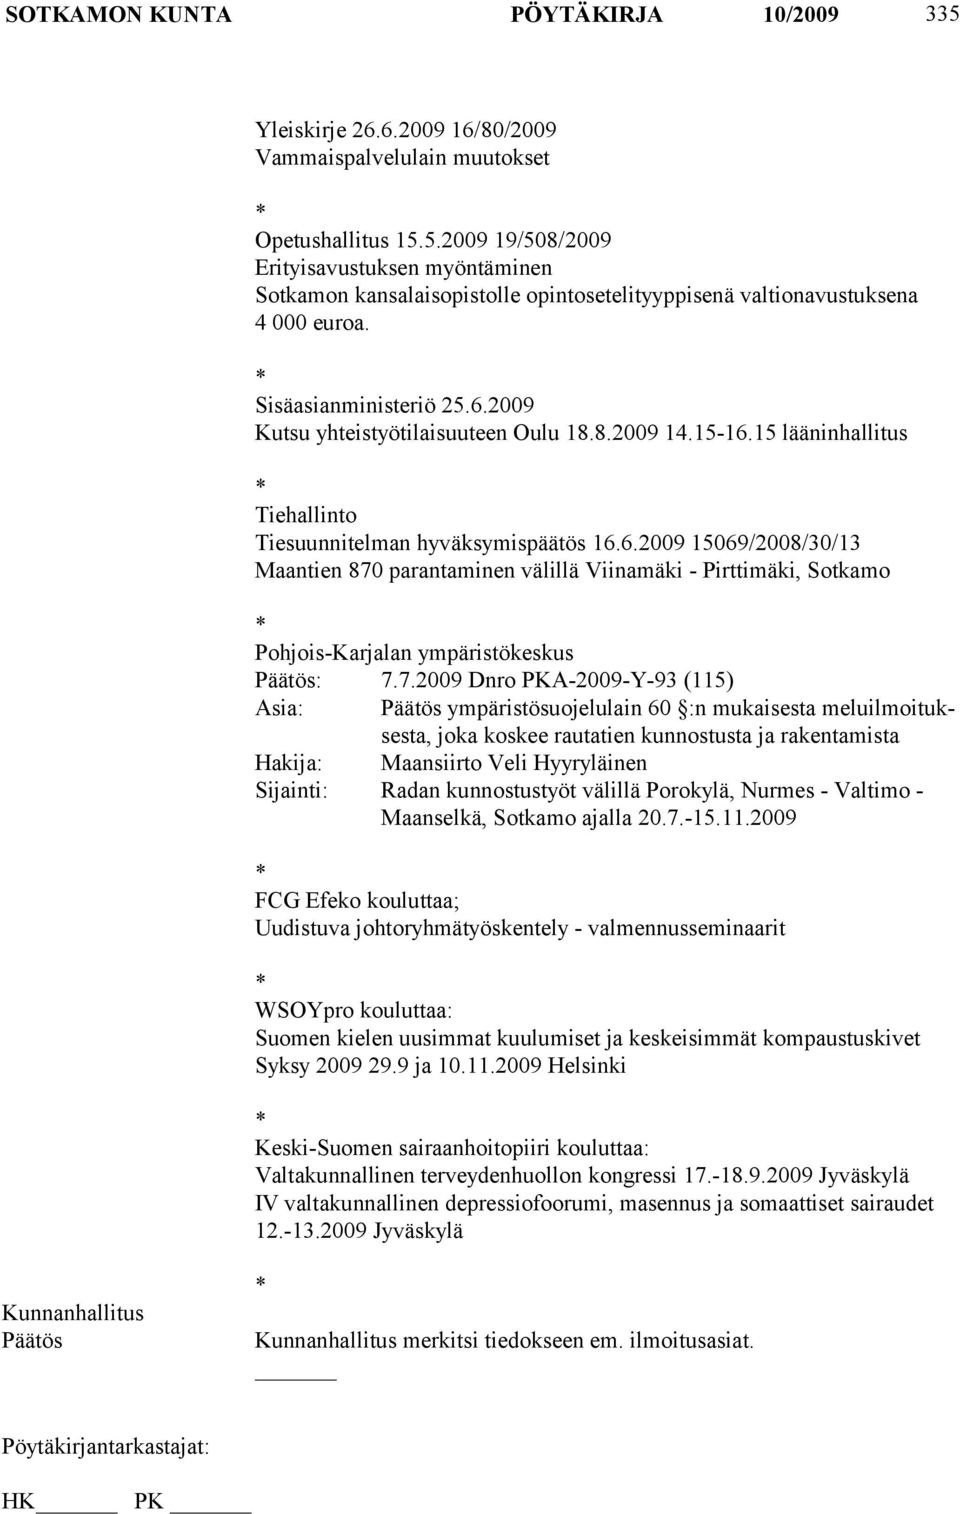 7.2009 Dnro PKA-2009-Y-93 (115) Asia: ympäristösuojelulain 60 :n mukaisesta meluilmoituksesta, joka koskee rautatien kunnostusta ja rakentamista Hakija: Maansiirto Veli Hyyryläinen Sijainti: Radan